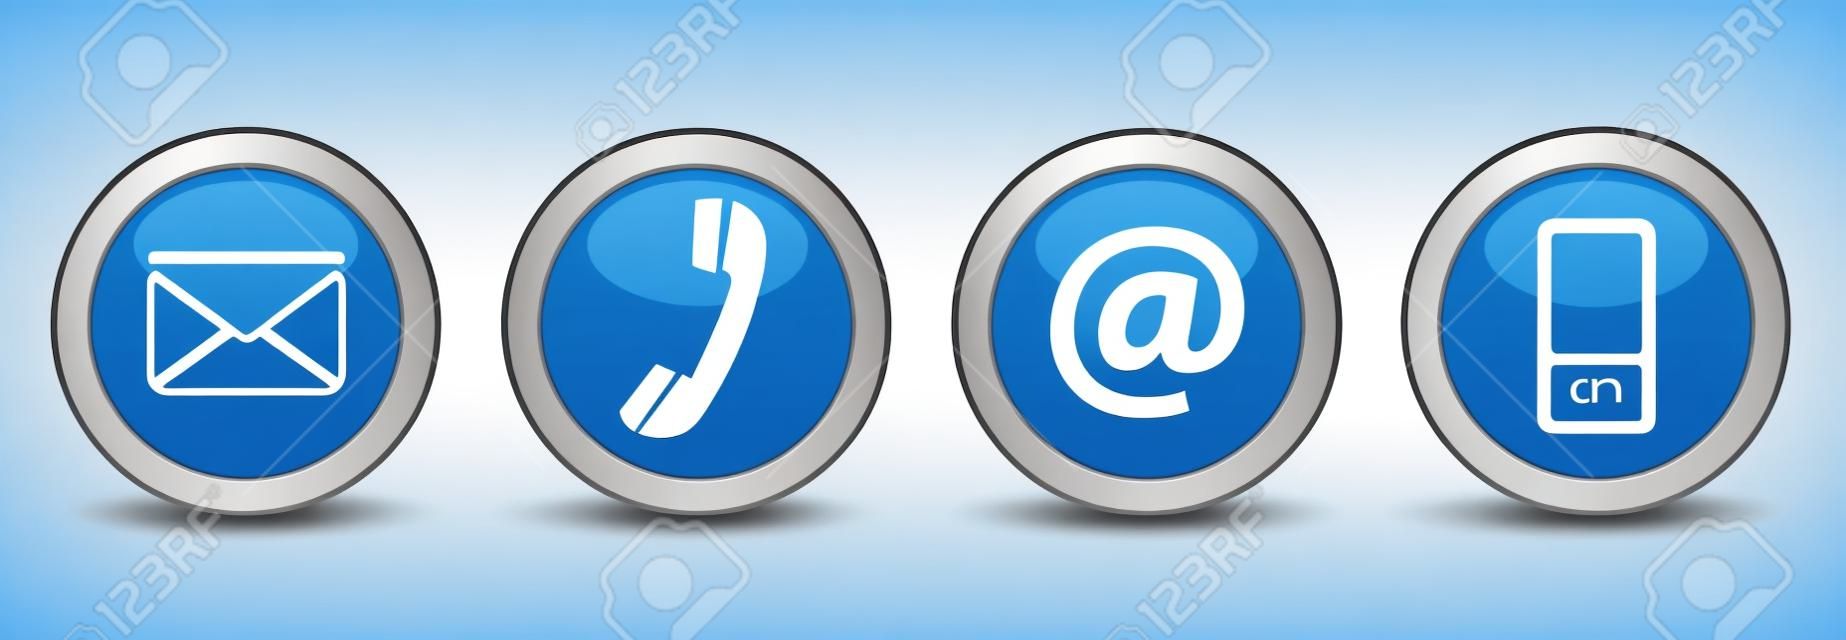 Contacteer ons web knoppen ingesteld met e-mail, op, telefoon en mobiele pictogrammen op blauwe zilveren badge vector EPS 10 illustratie geïsoleerd op witte achtergrond.